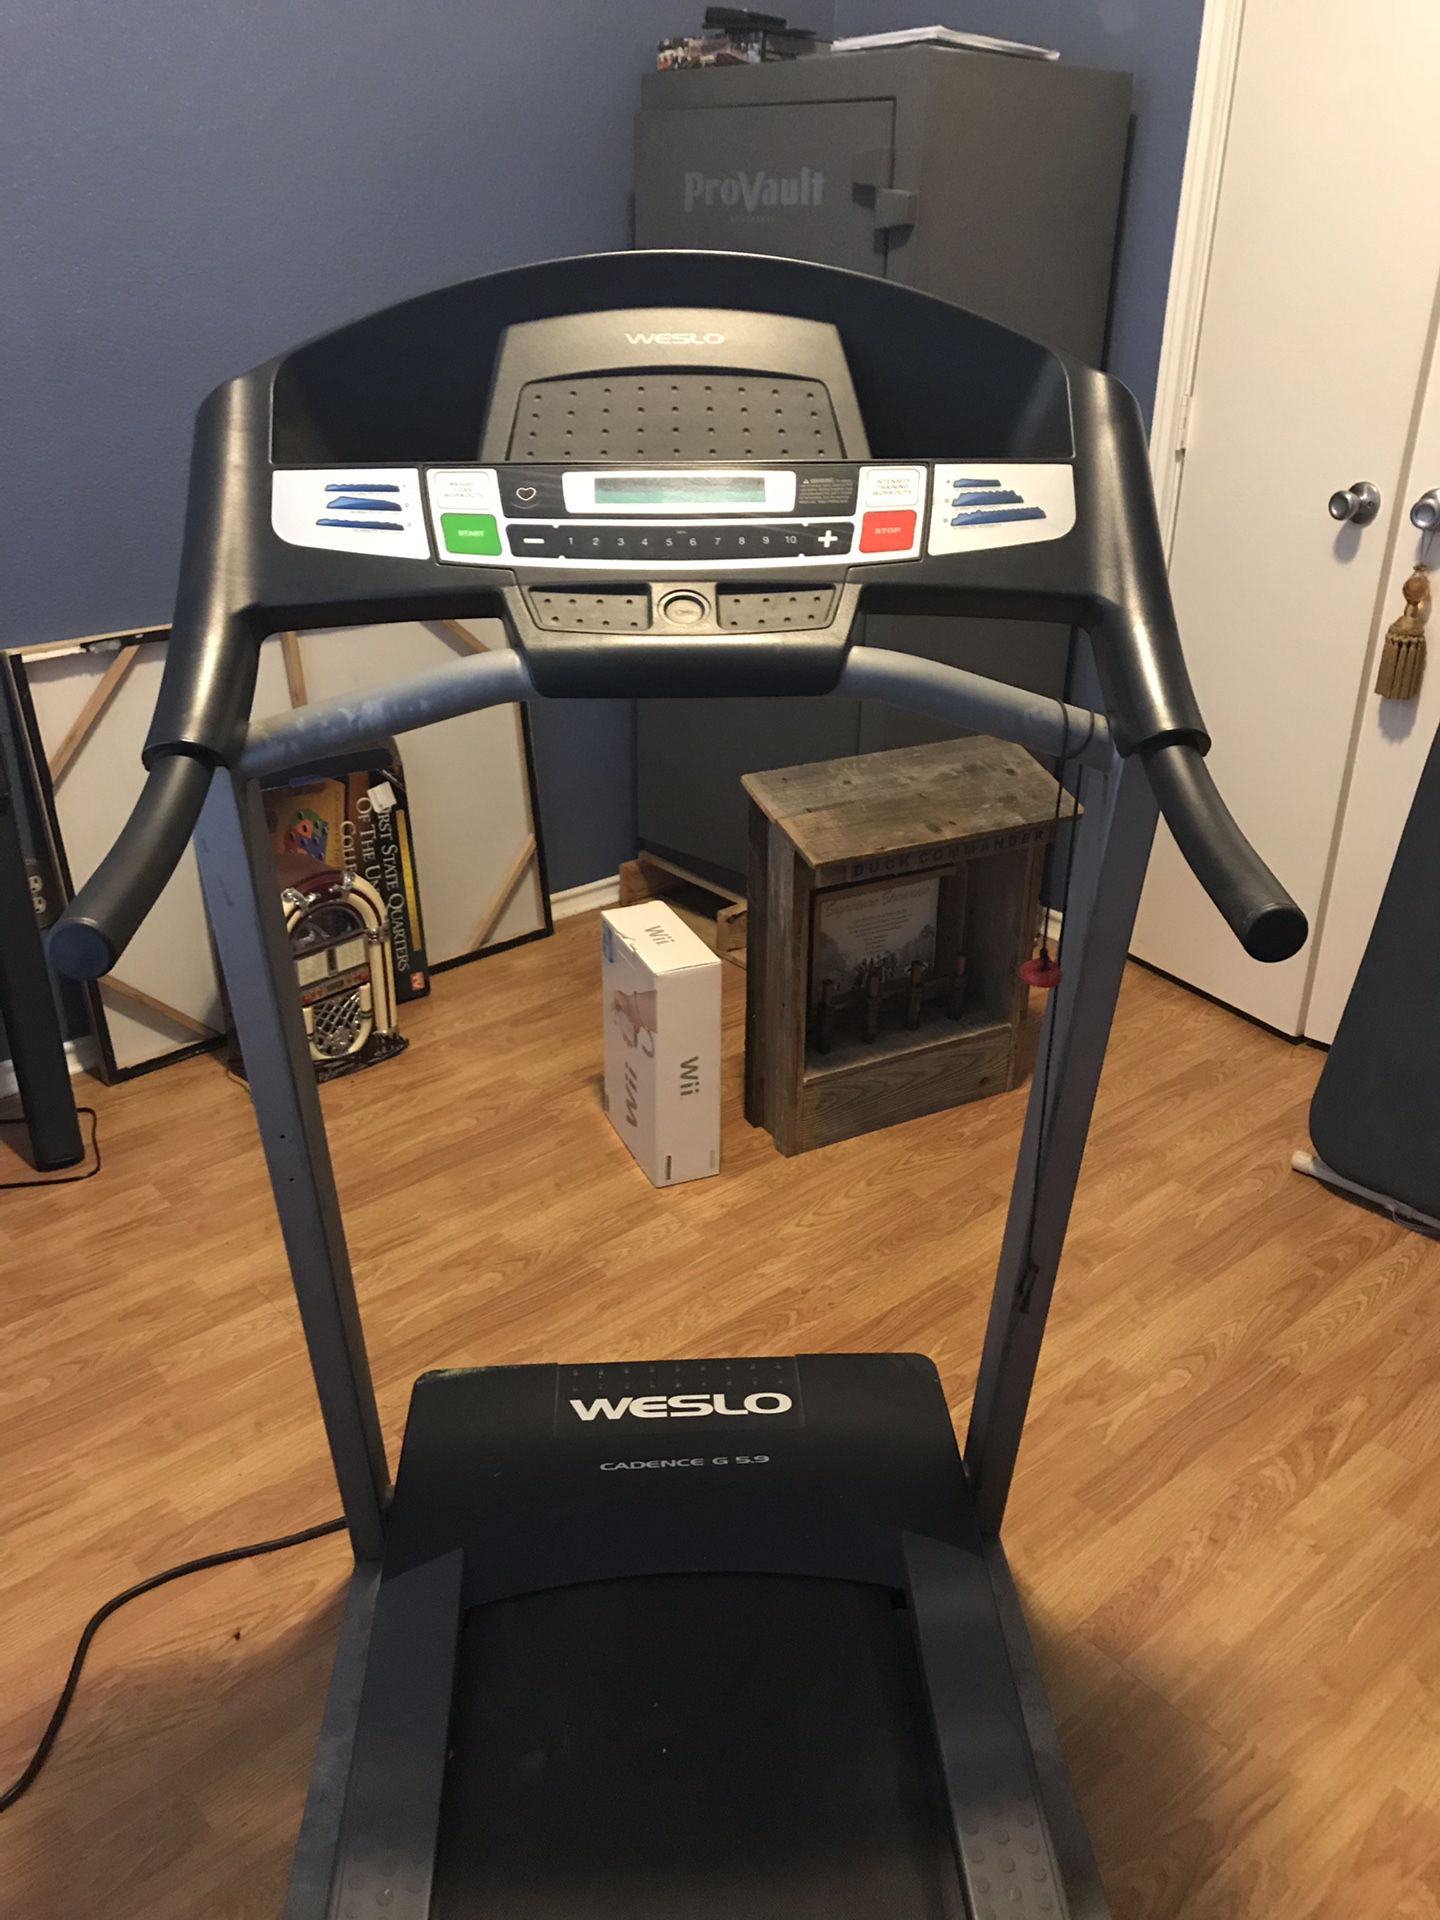 Treadmill -great condition!